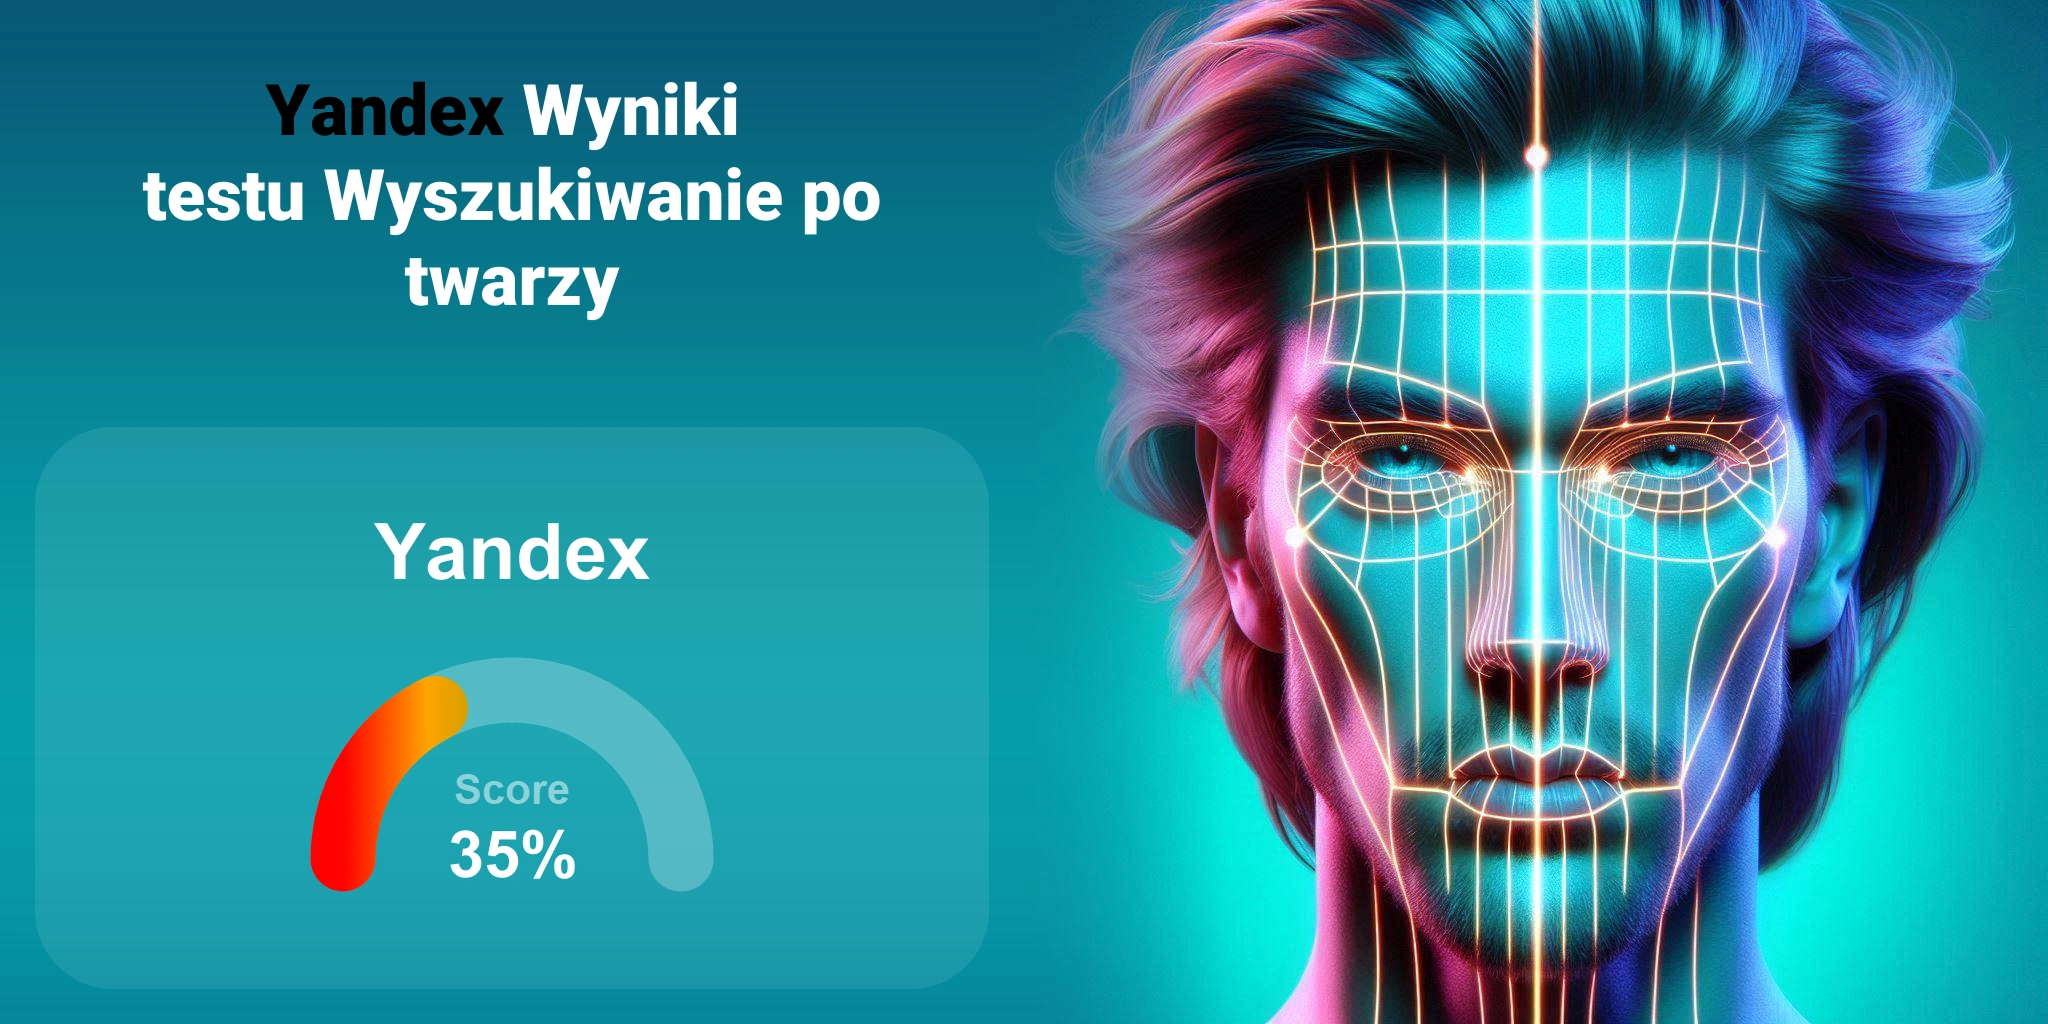 Czy Yandex jest najlepszy do wyszukiwania twarzy?